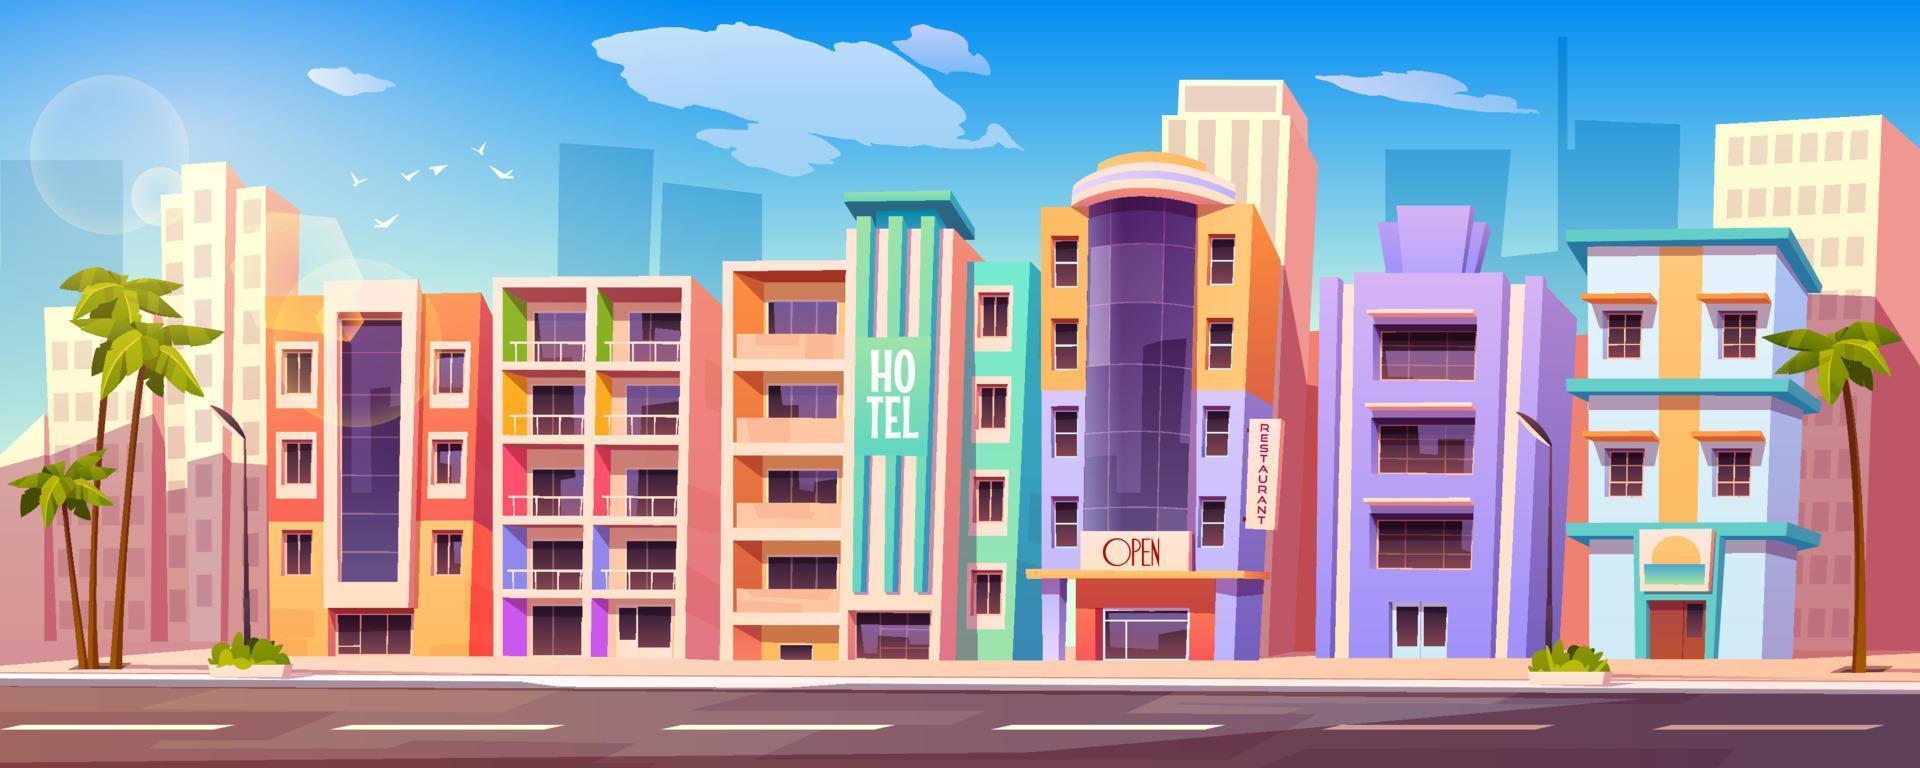 Straße in Miami mit Hotels und Palmen vektor